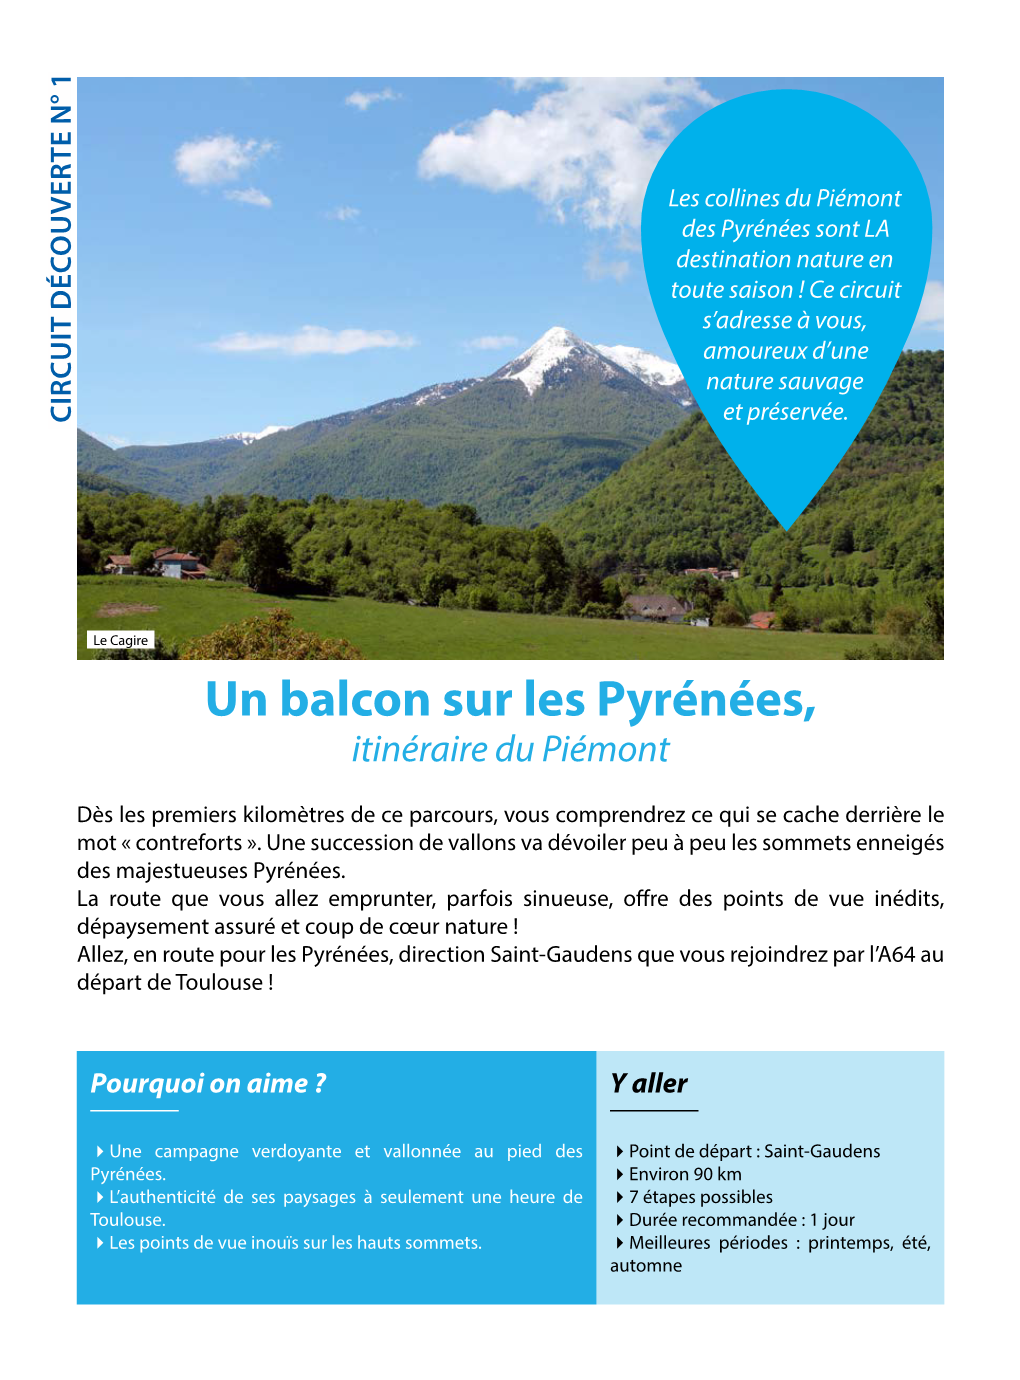 Un Balcon Sur Les Pyrénées, Itinéraire Du Piémont